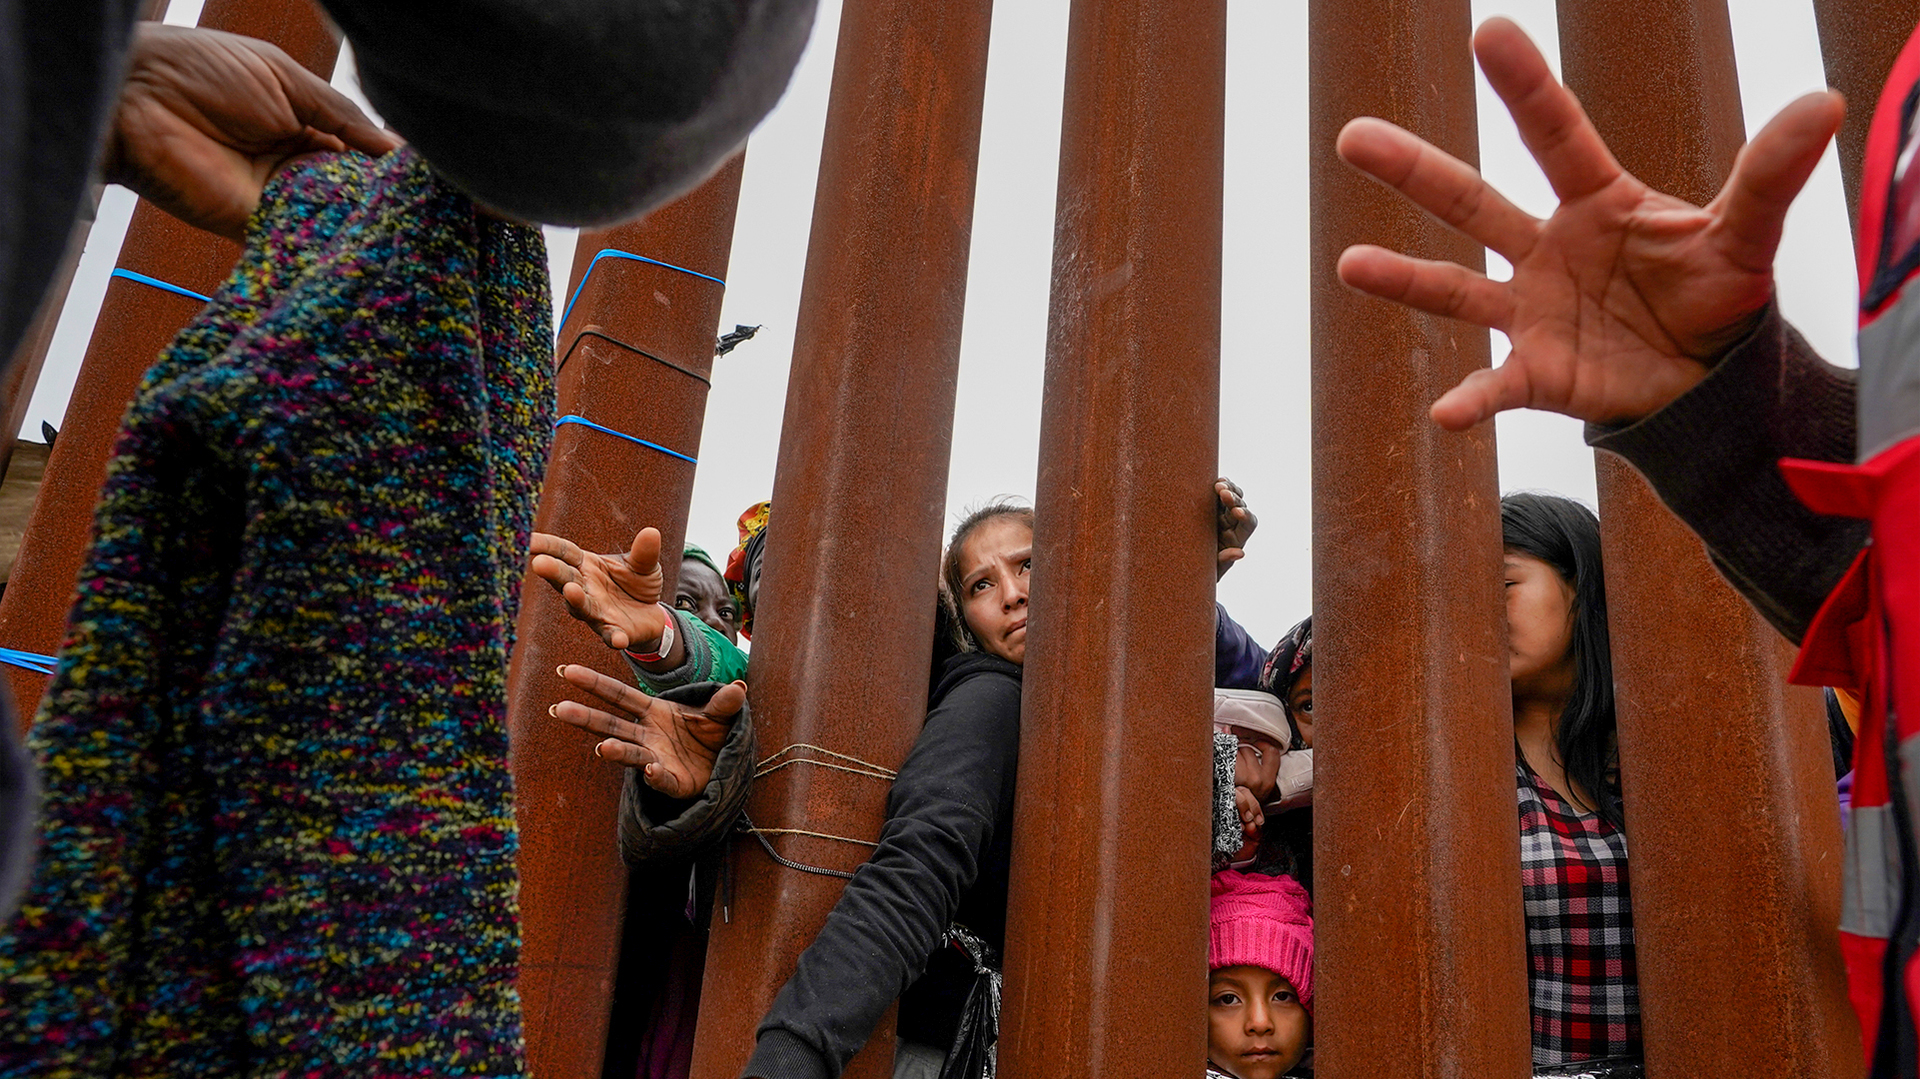 Migrante que cruzou a fronteira ilegalmente: "Os EUA deveriam se preocupar com a falta de segurança na fronteira" (VÍDEO)